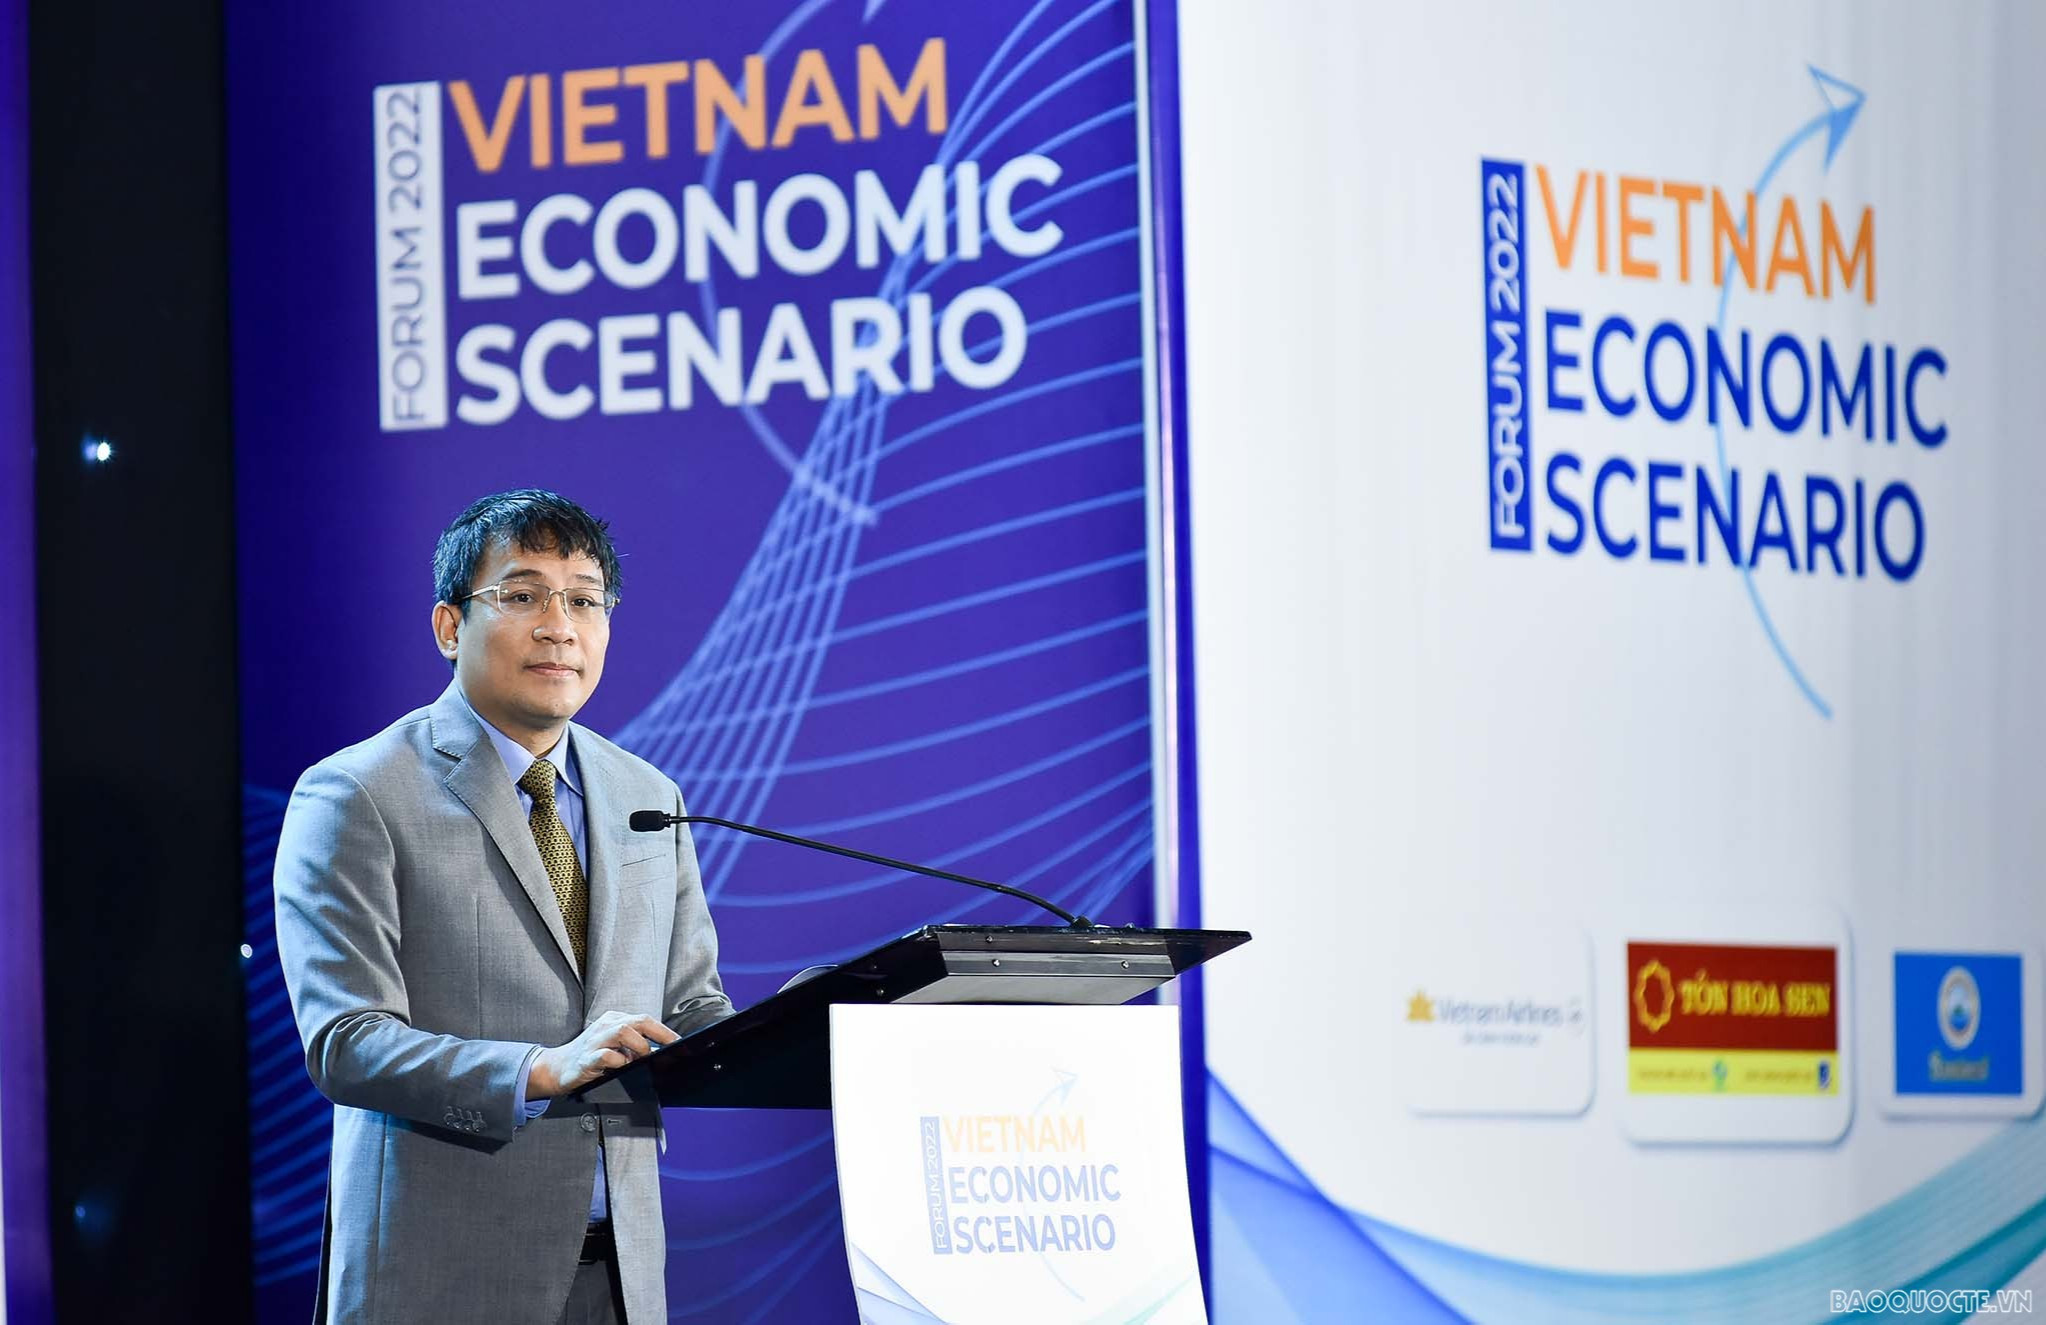 Diễn đàn thường niên Kịch bản Kinh tế Việt Nam năm 2022 với chủ đề “Phục hồi và bứt tốc: Từ chiến lược kích thích kinh tế đến sức bật của các ngành và doanh nghiệp”